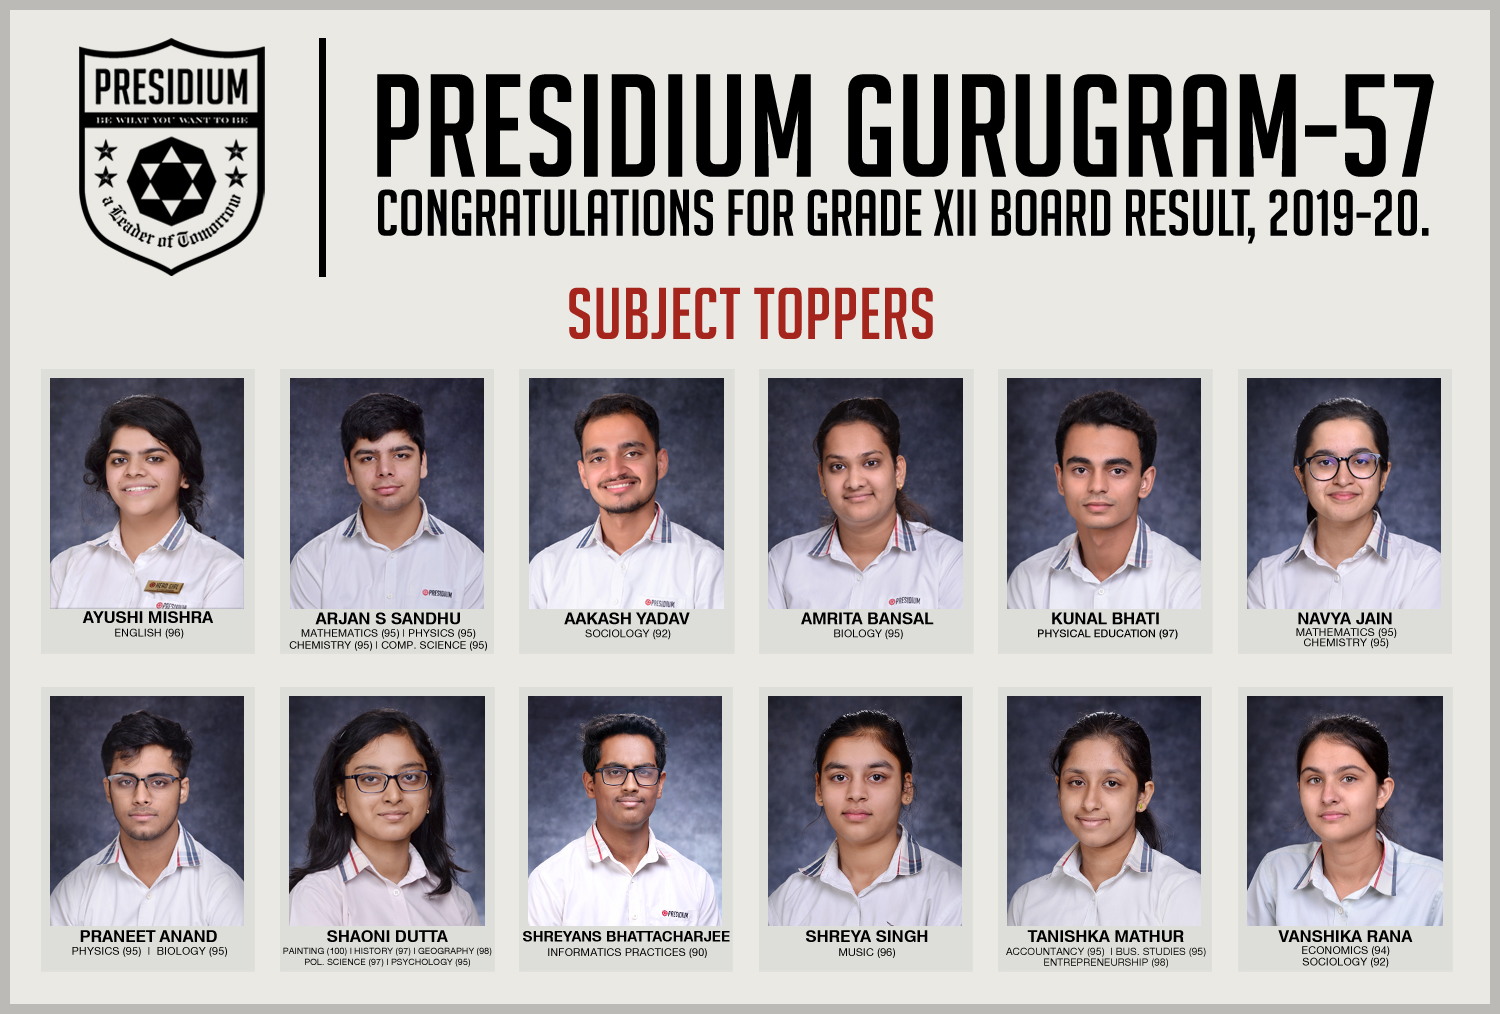 Presidium Gurgaon-57, CONGRATULATIONS STUDENTS FOR BRILLIANT 12TH BOARD RESULTS!